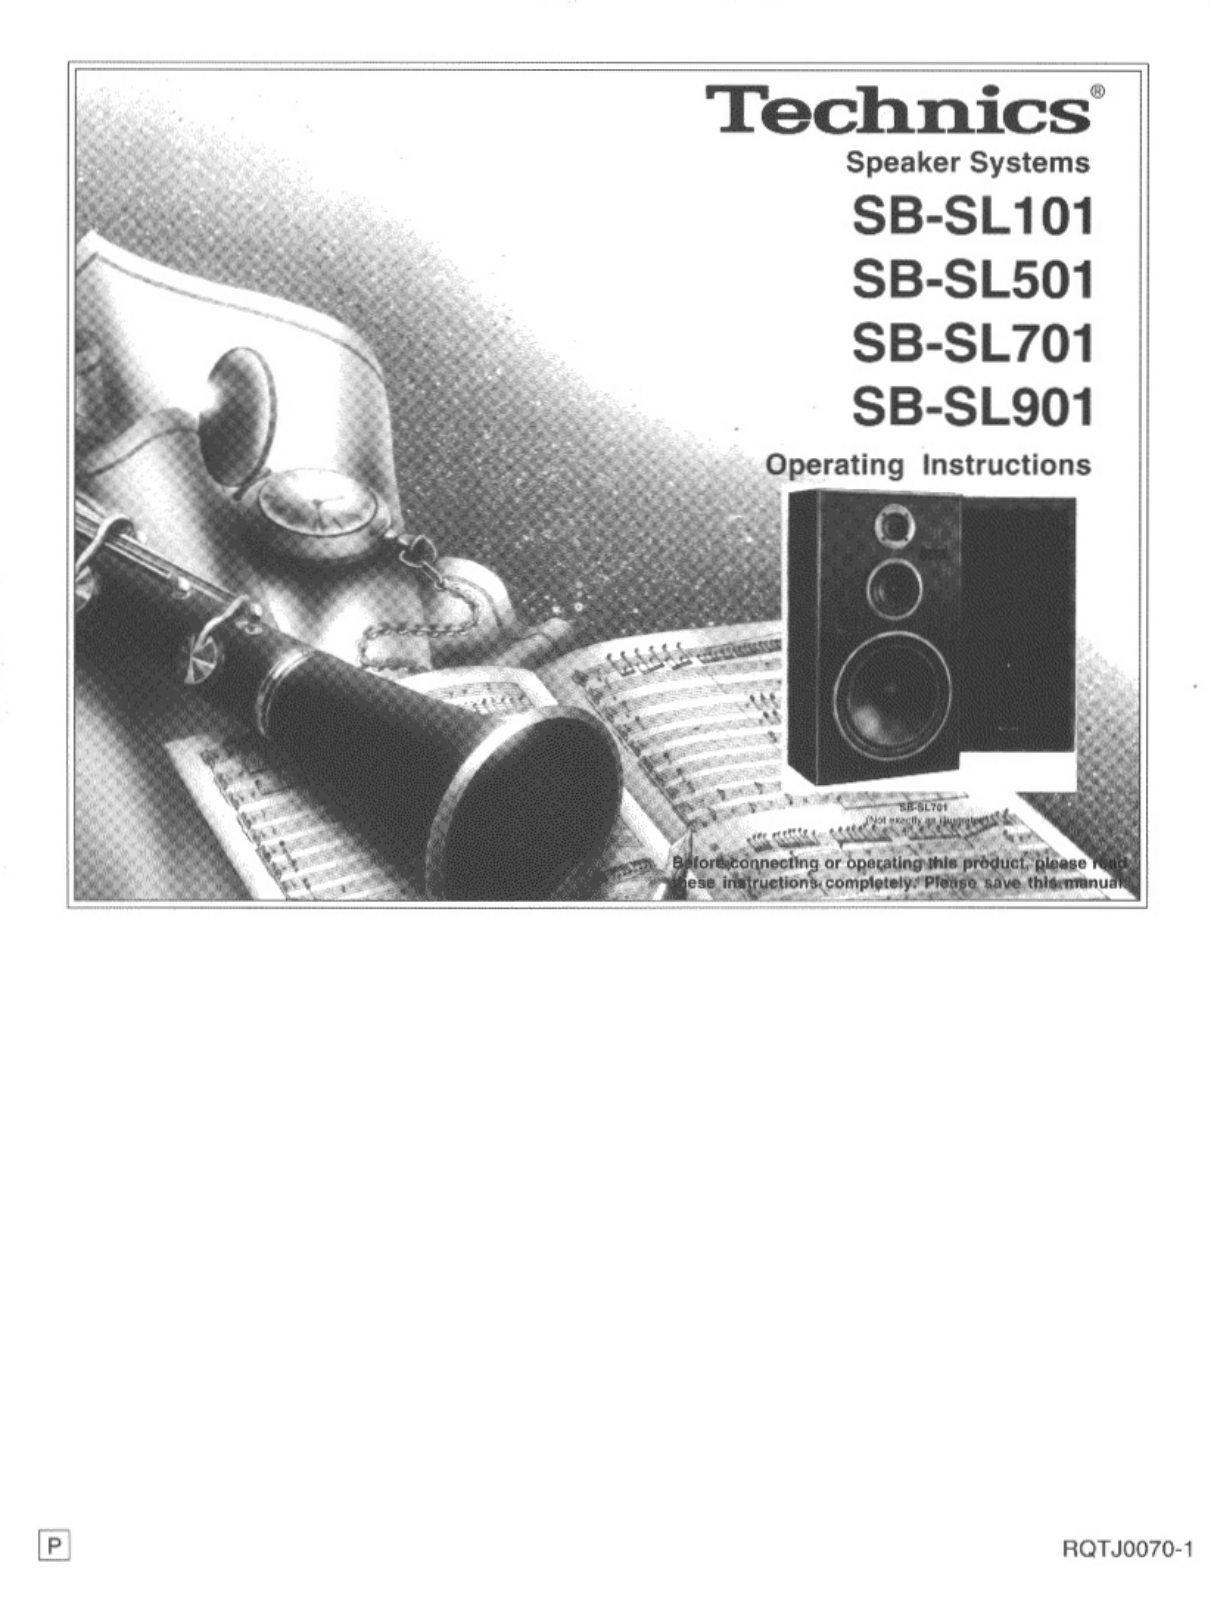 Panasonic SB-SL901, SB-SL501, SB-SL701, SB-SL101 User Manual